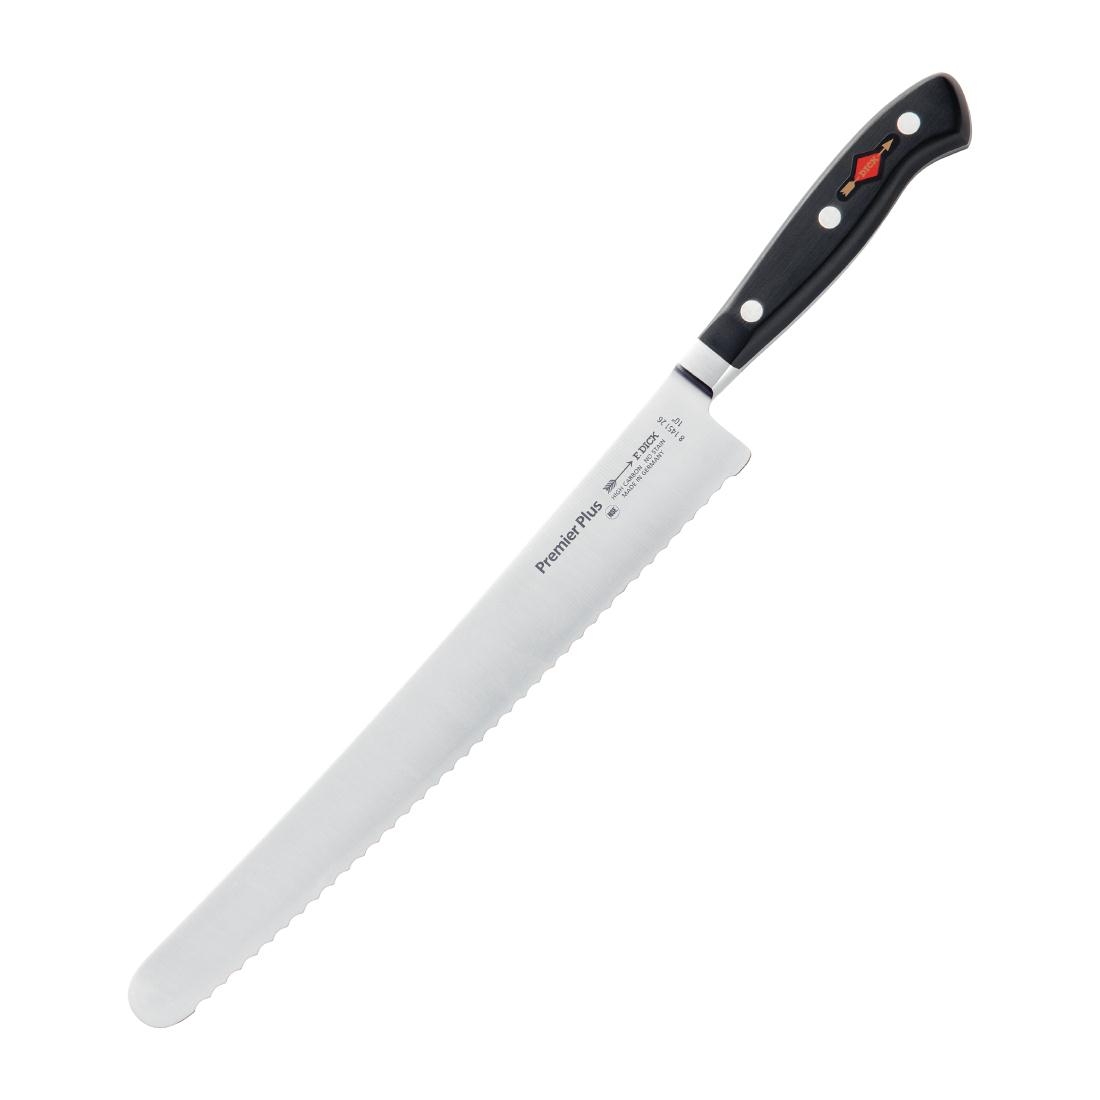 Нож dick 2139 15. Ножи dick Геркулес. Cock нож. F dick